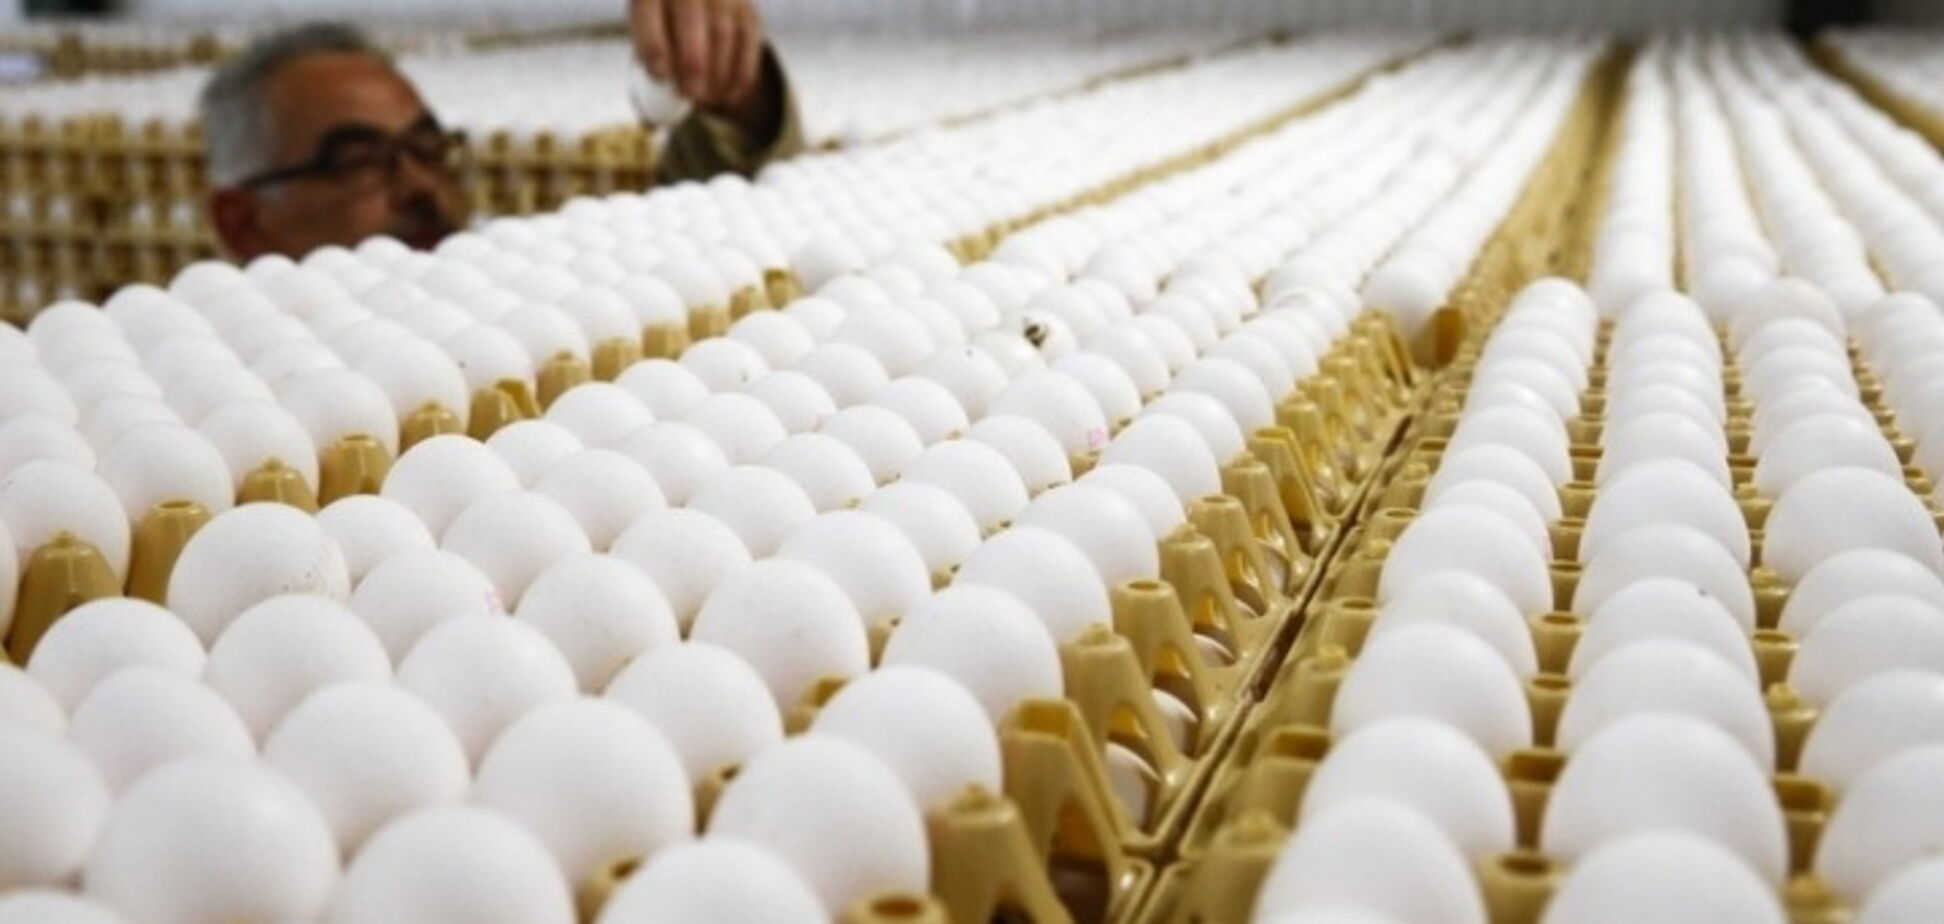 Экспортный прорыв Украины: продажа яиц подскочила в несколько раз